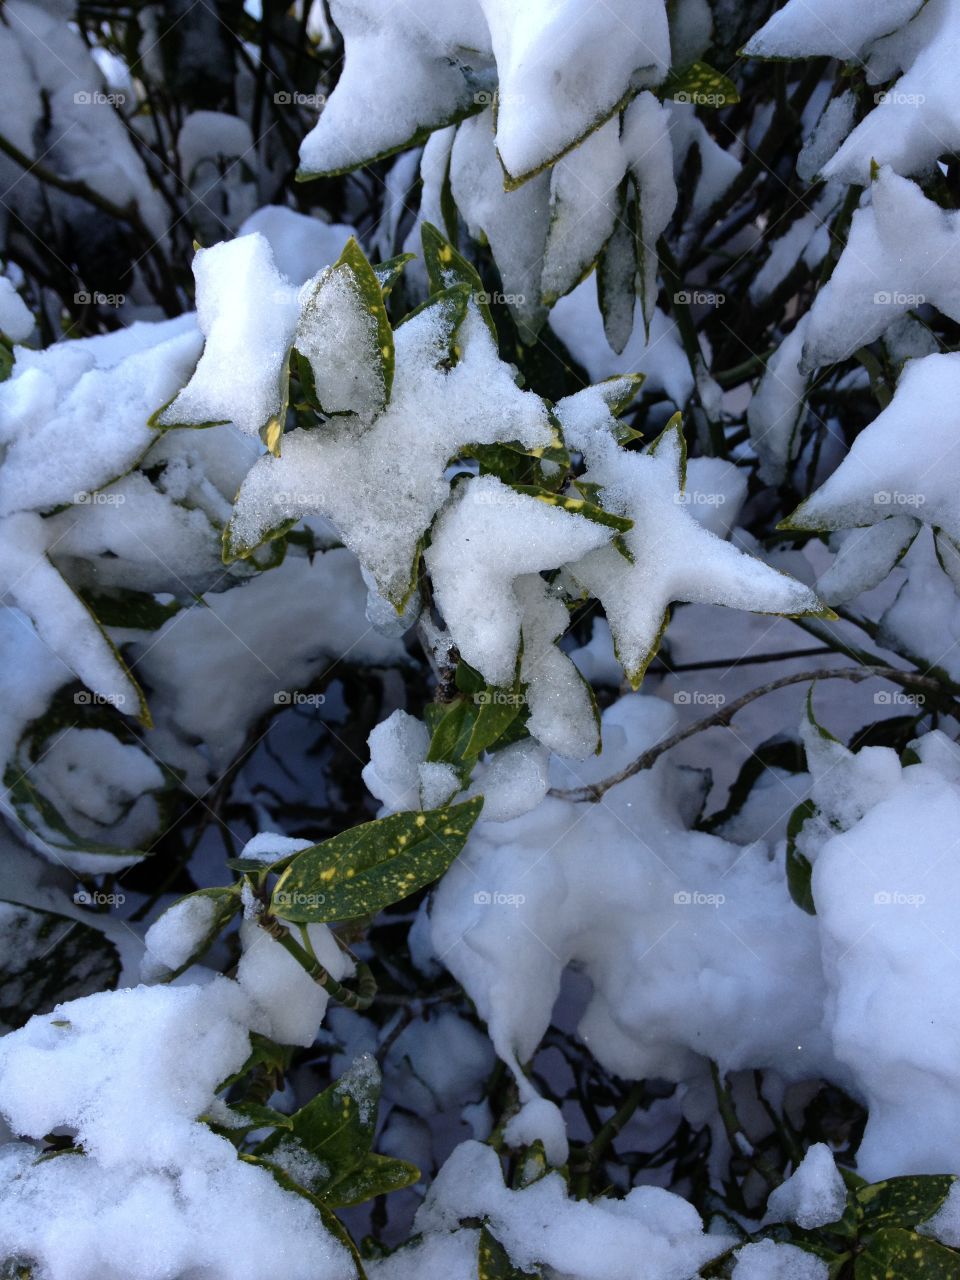 Snow on leaves 